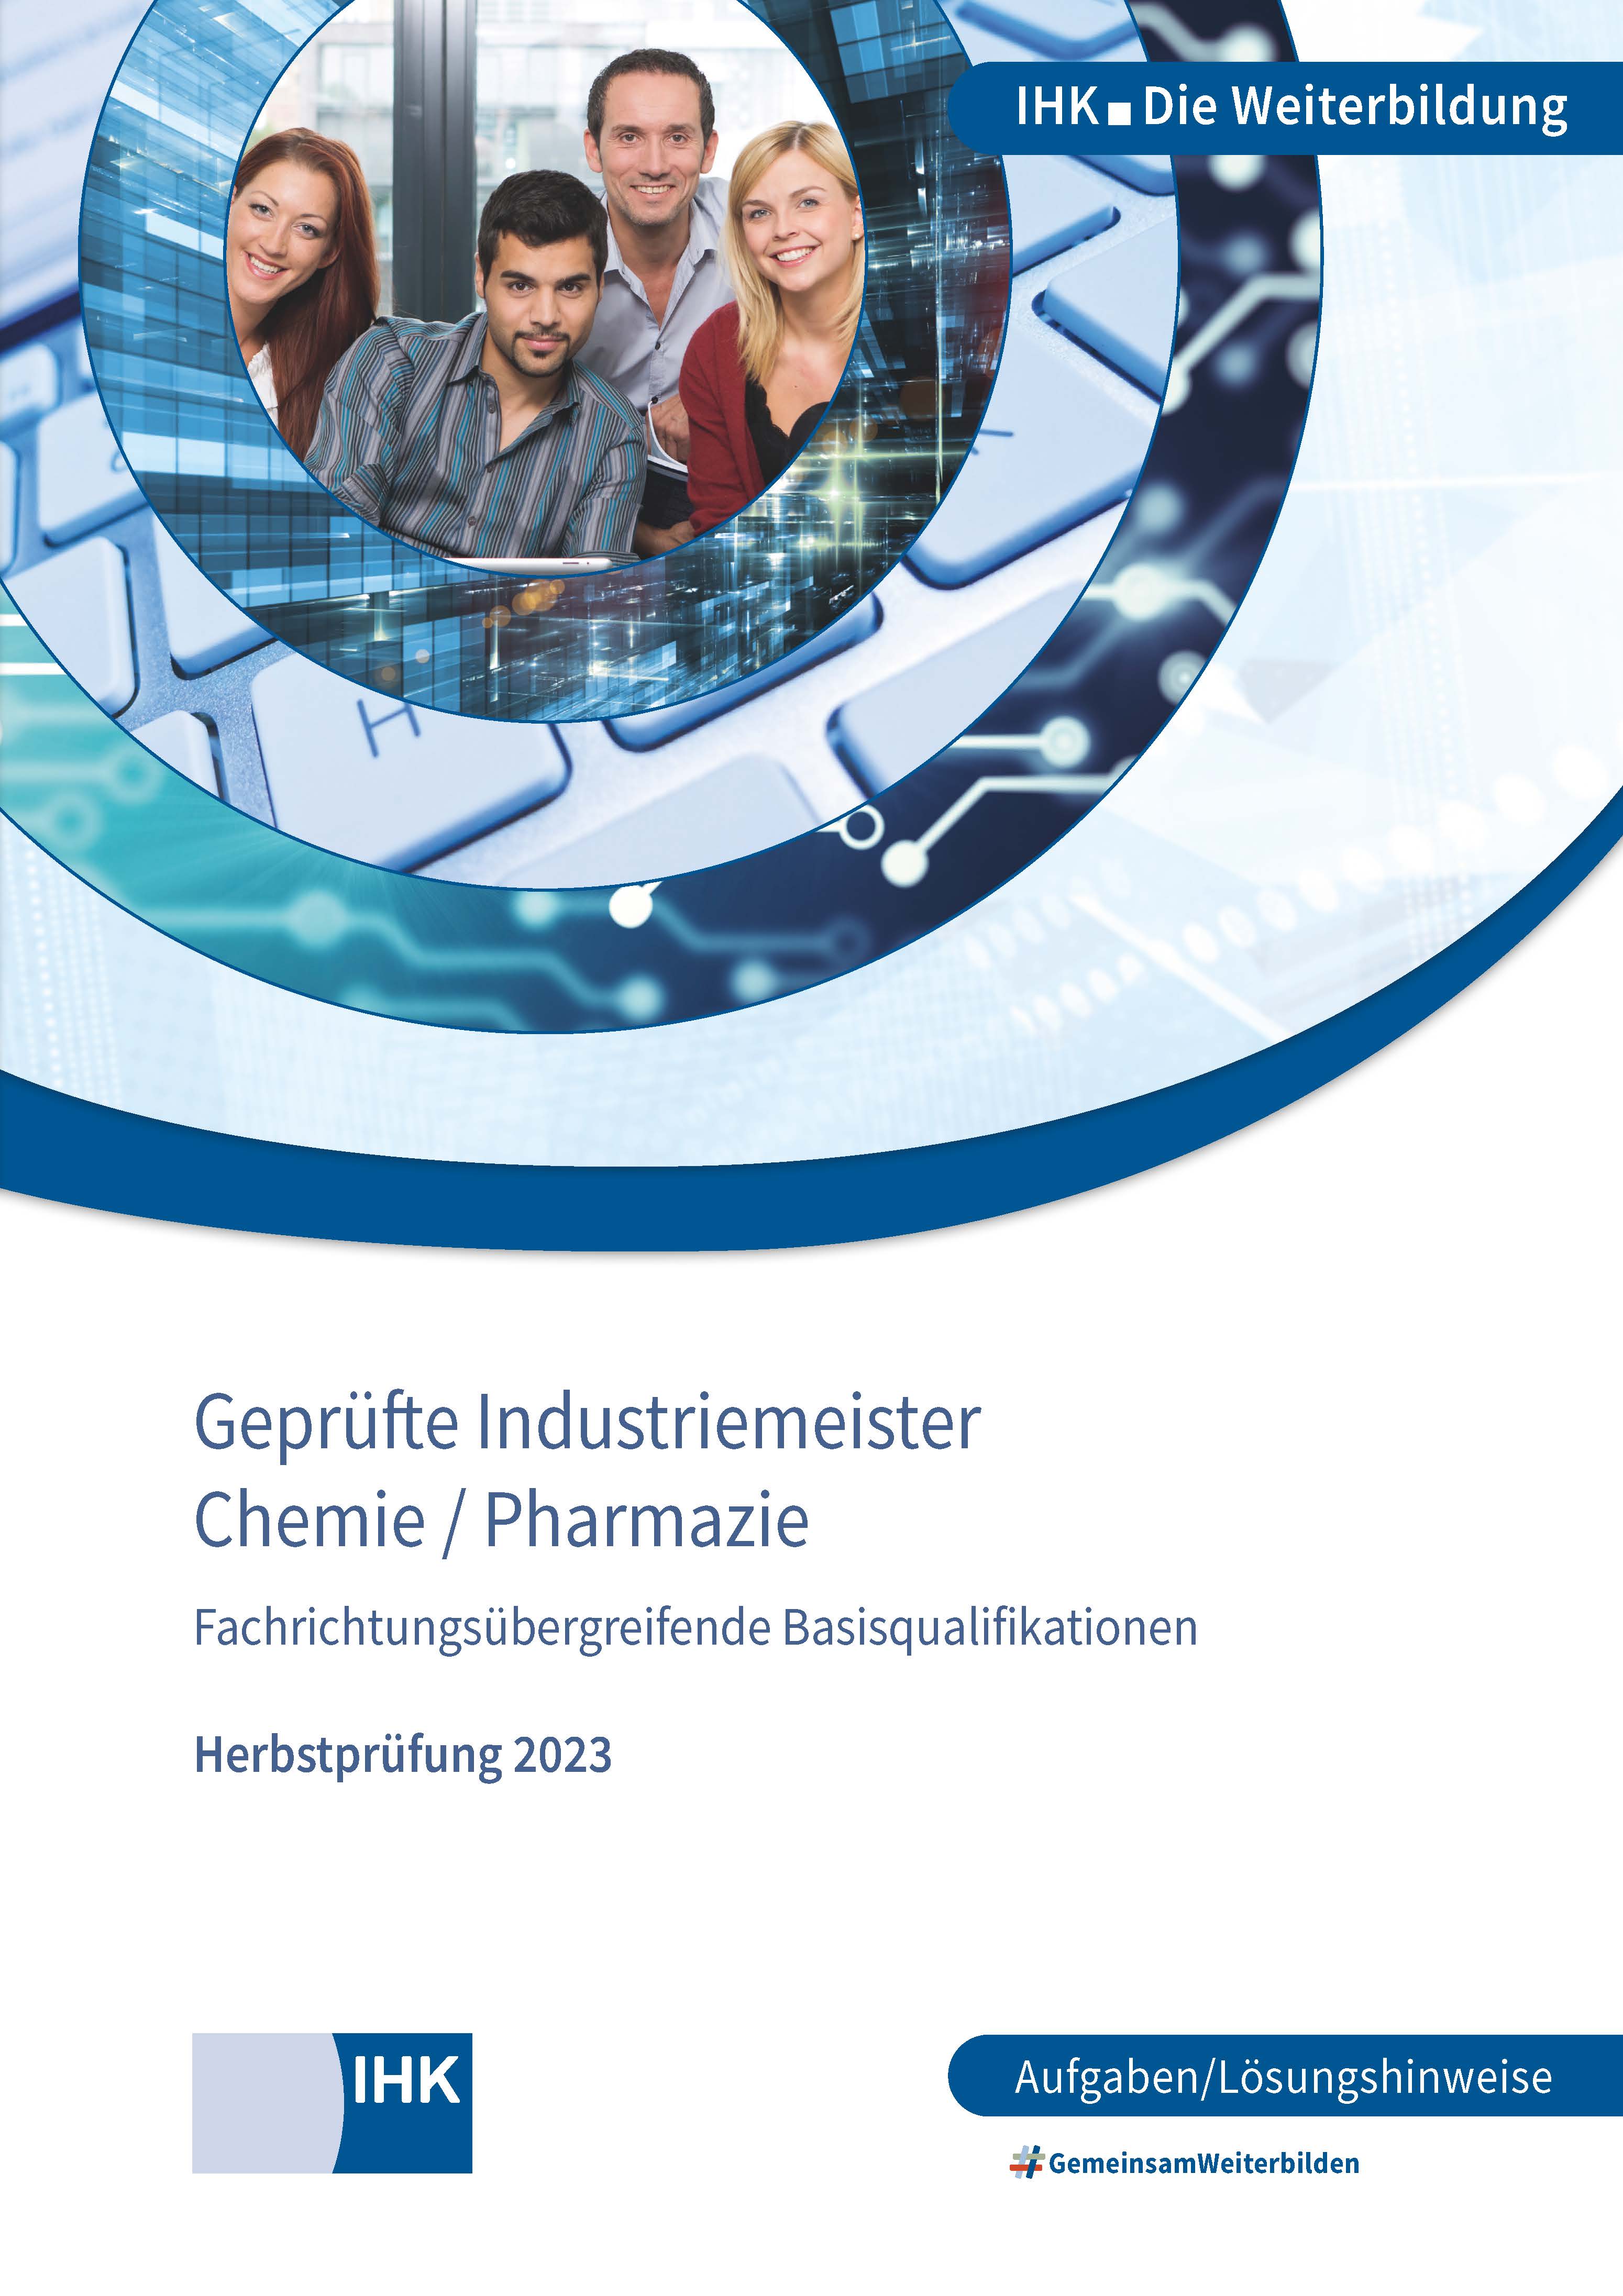 Cover von Geprüfte Industriemeister Chemie/Pharmazie - Herbstprüfung 2023 (Verordnung 2004/Verordnung 2010)